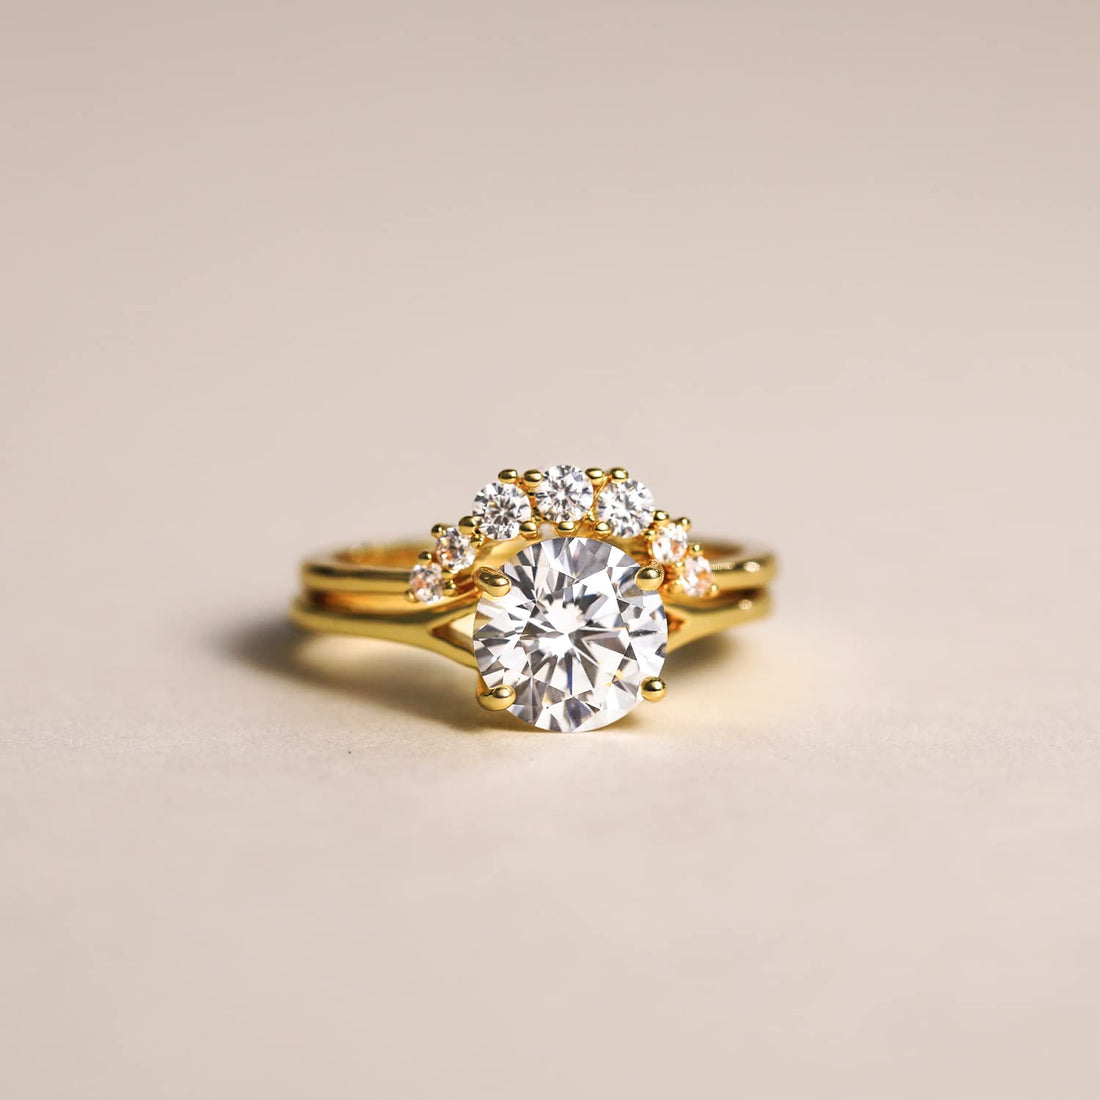 shiny engagement rings; quality wedding rings; Eamti;